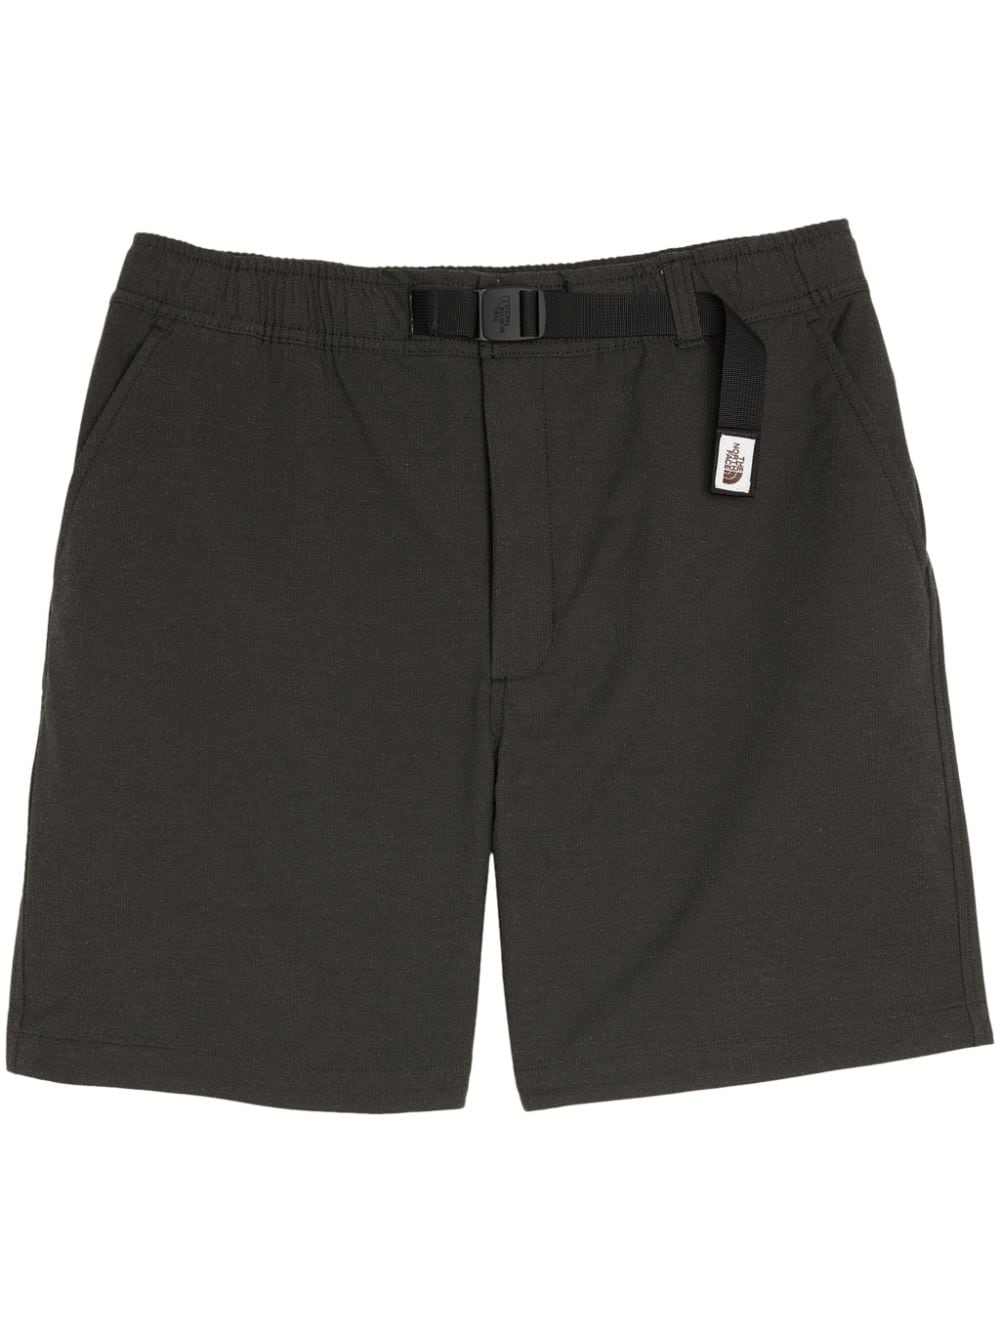 M66 Tek Twill shorts